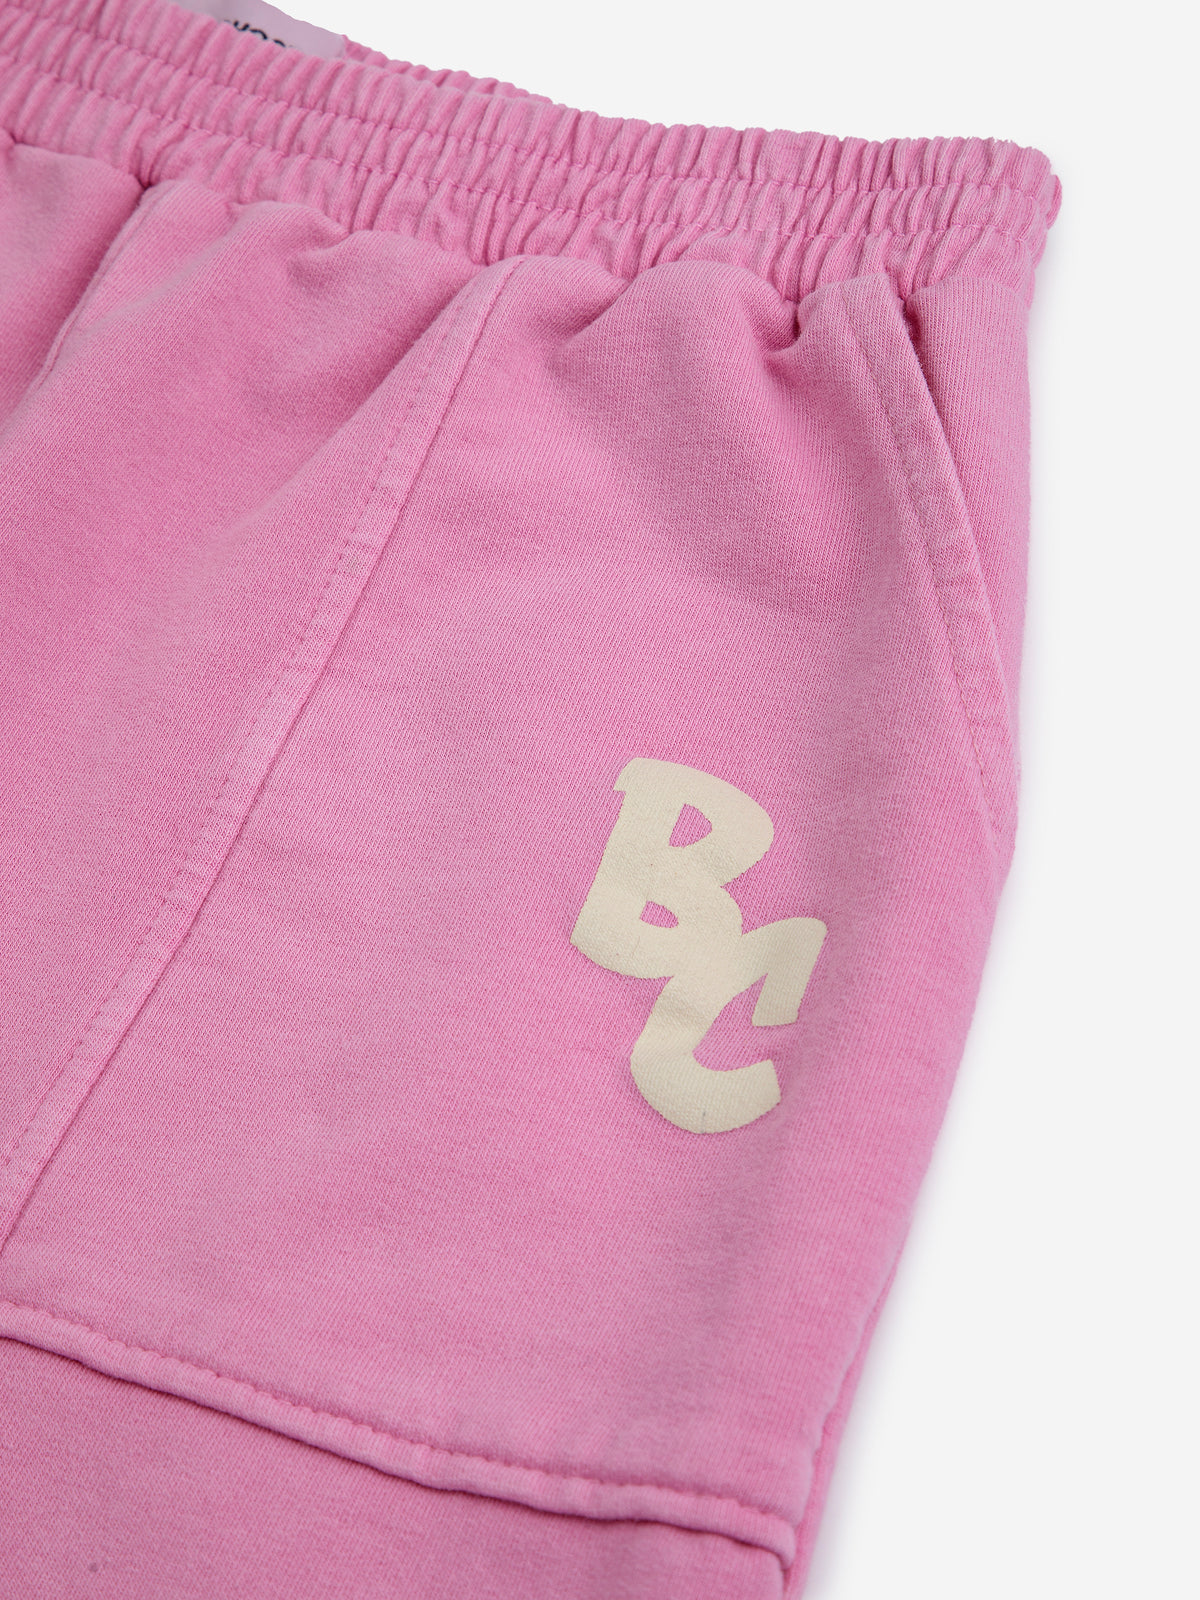 Bc pink jogging pants, Bobo Choses